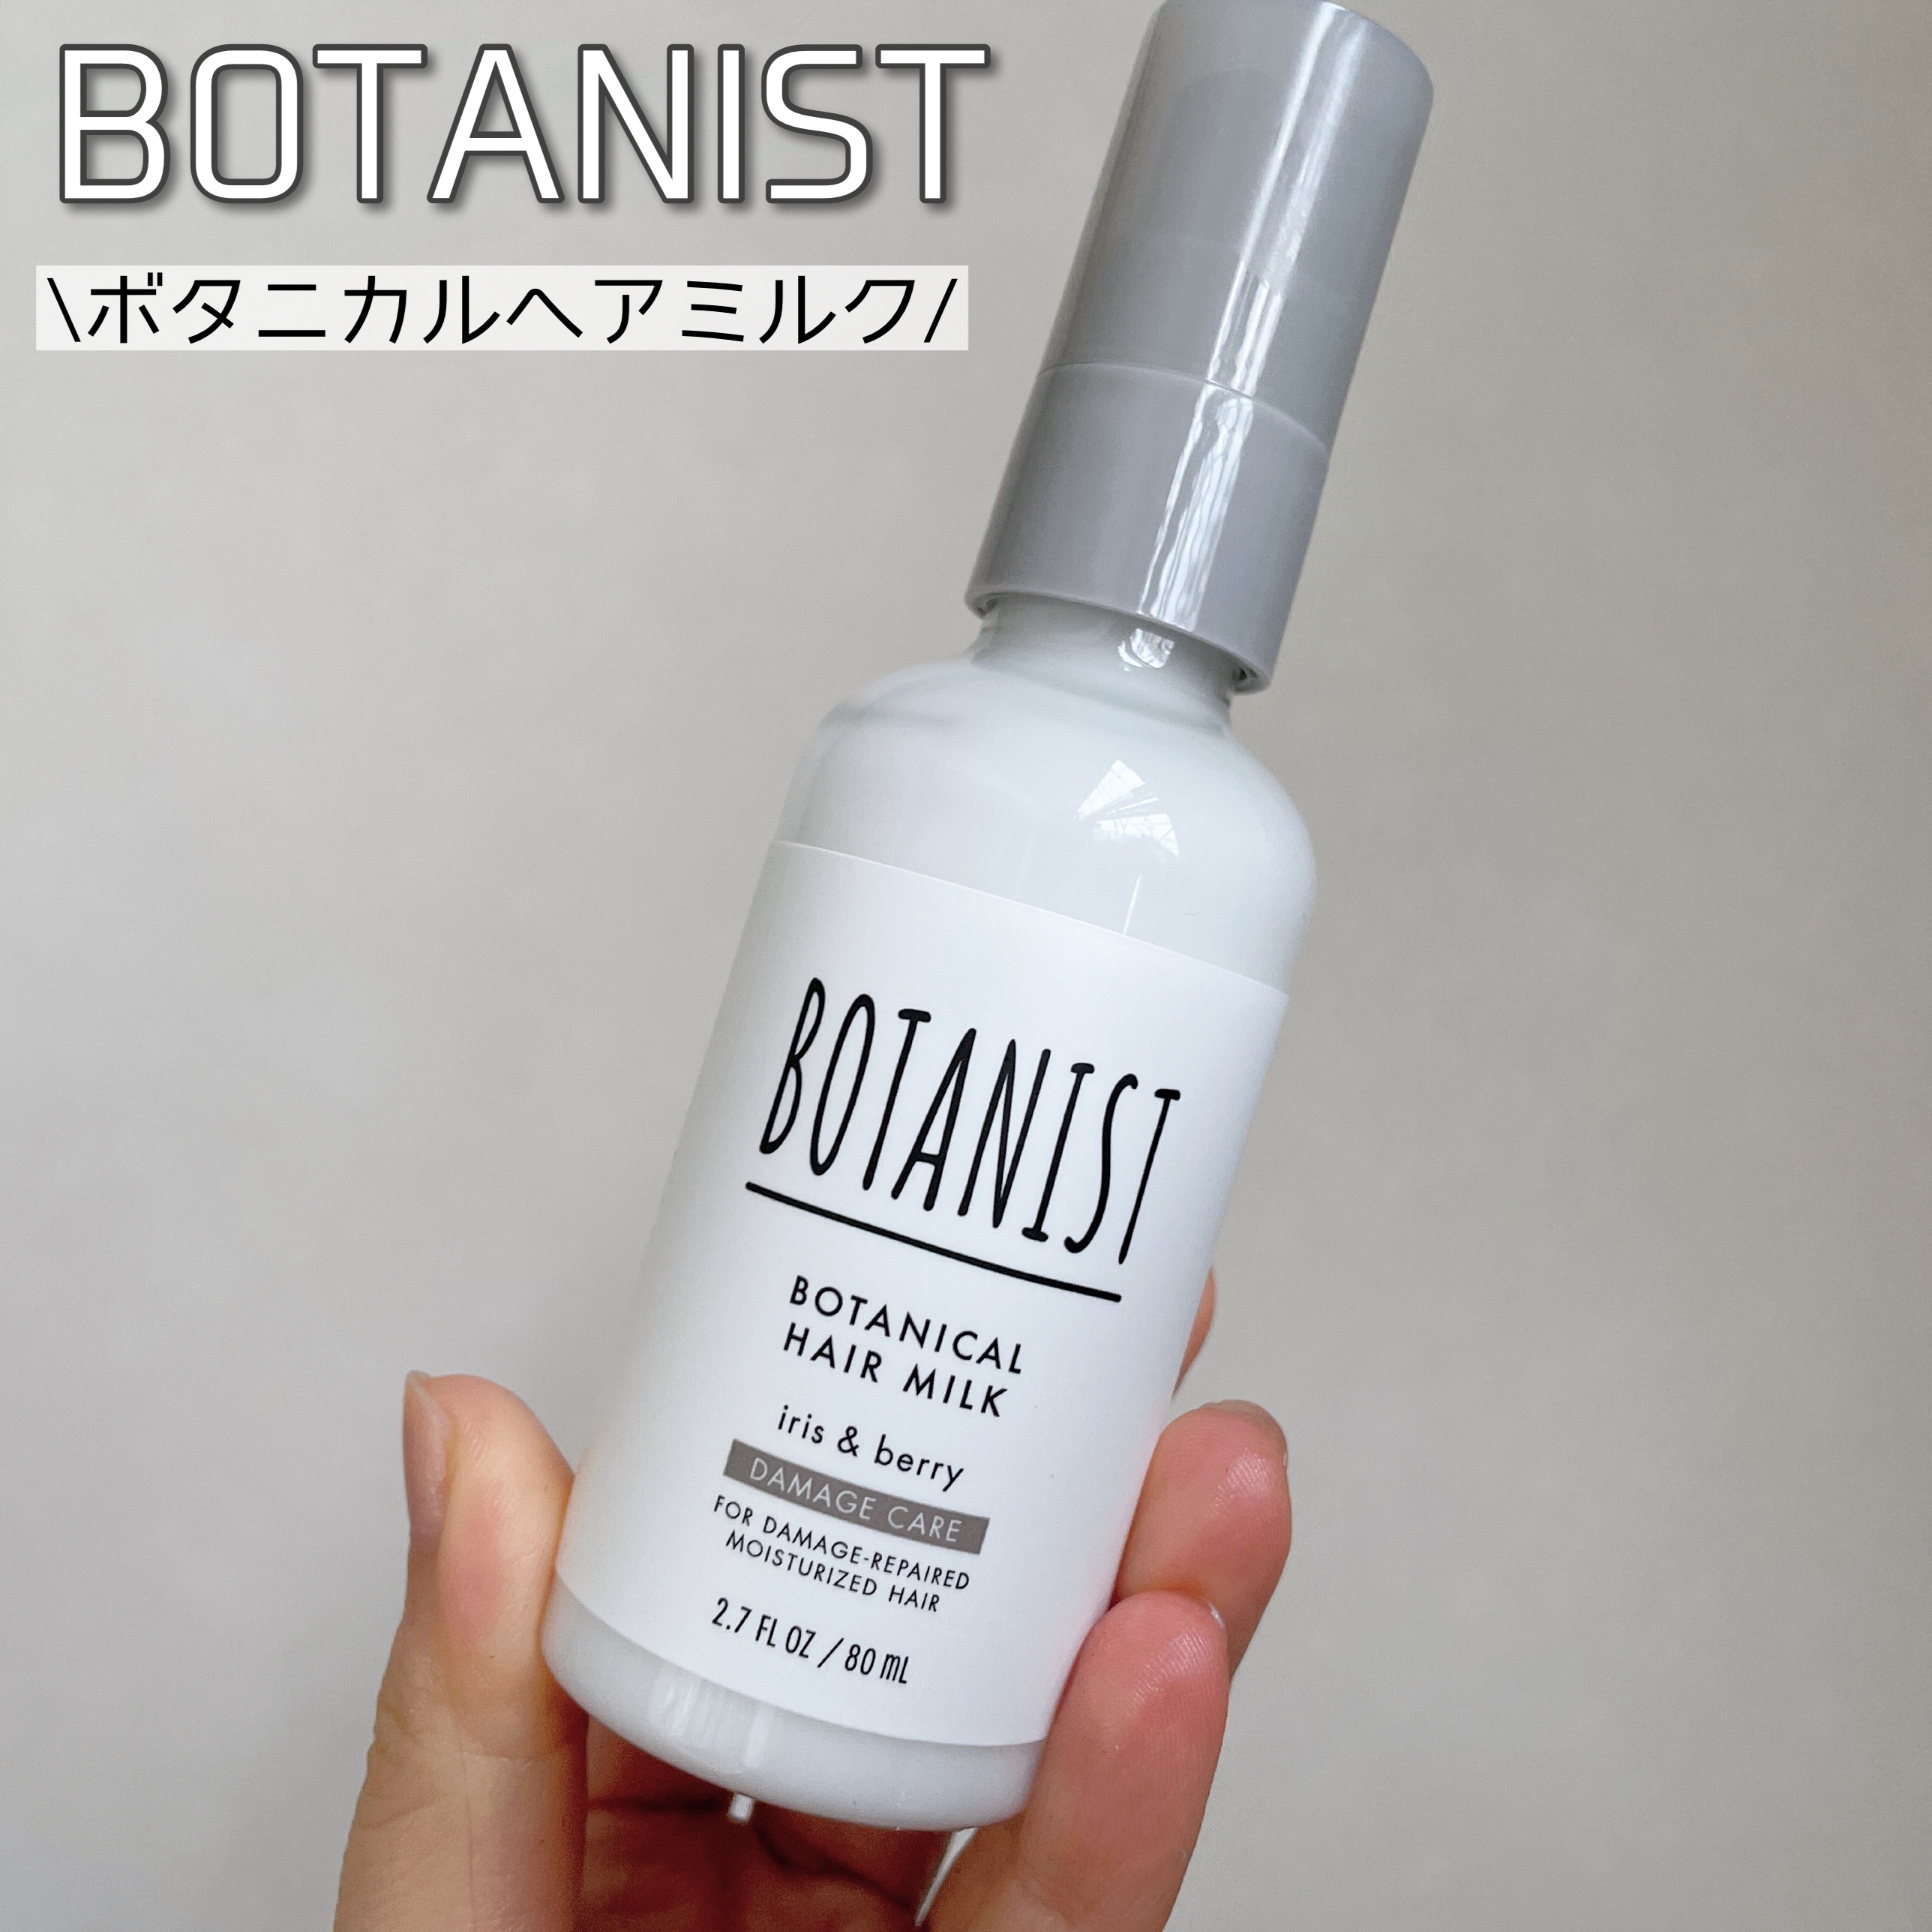 BOTANIST(ボタニスト) ボタニカルヘアミルク ダメージケアの良い点・メリットに関するなゆさんの口コミ画像1